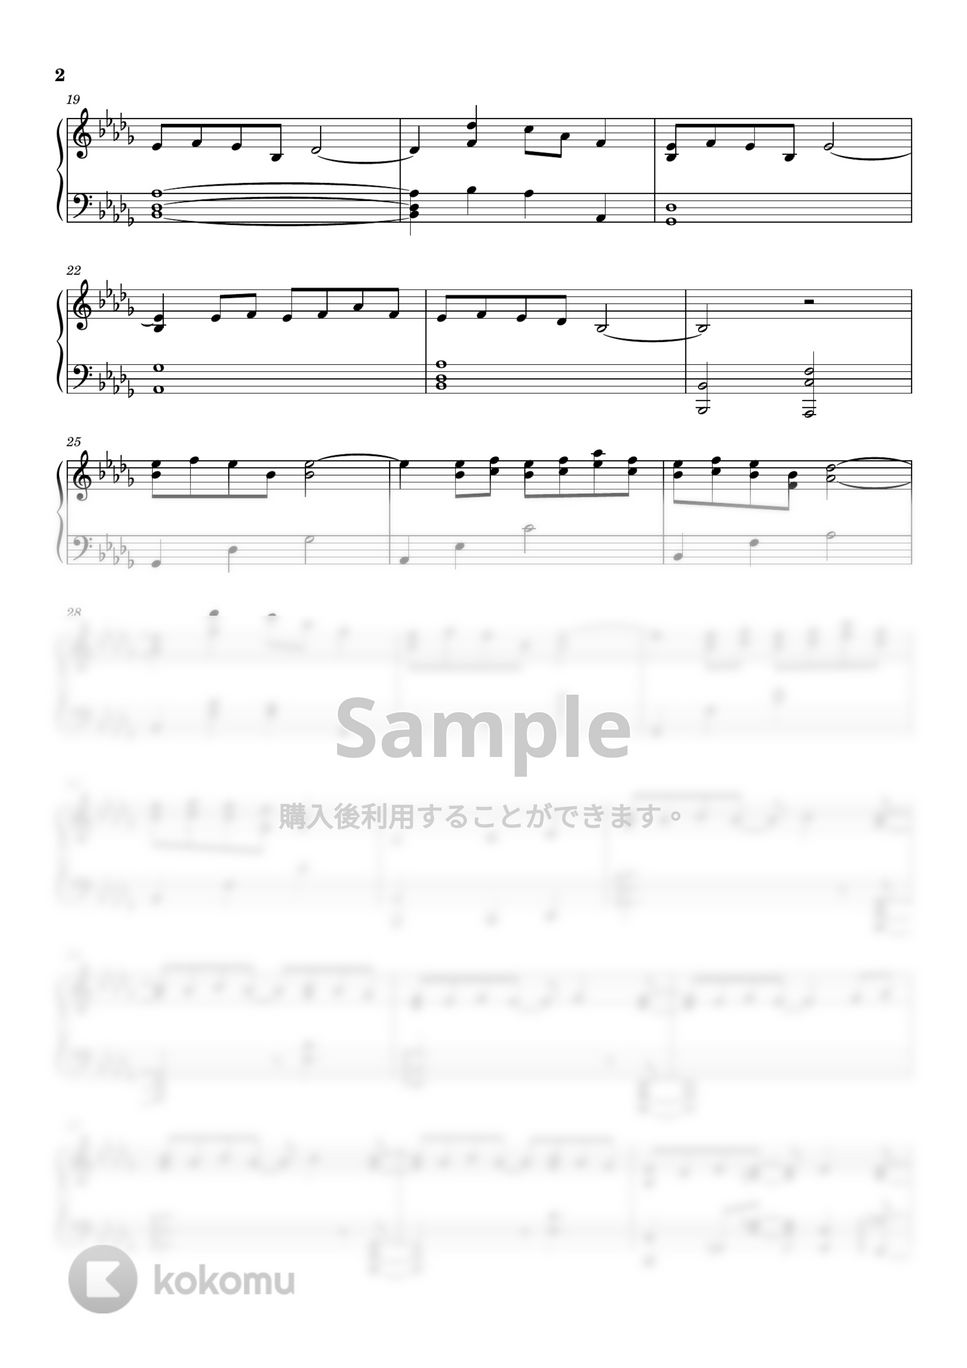 坂本龍一 - 戦場のメリークリスマス (ピアノソロ上級) by pianon